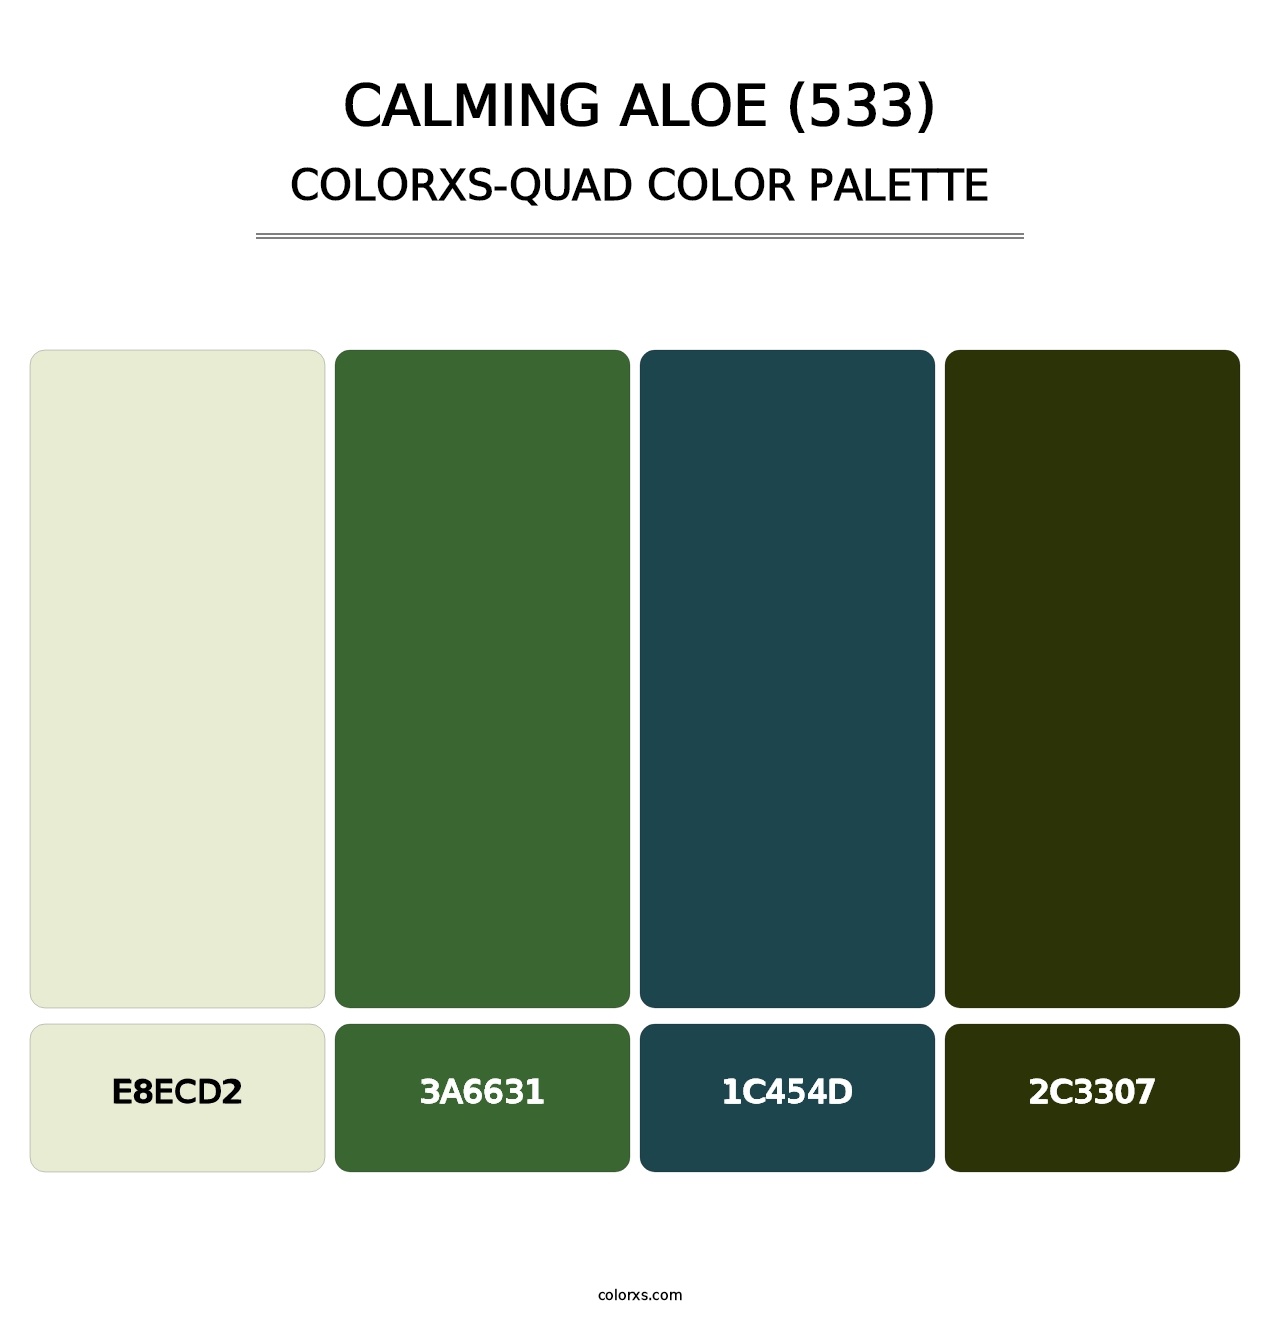 Calming Aloe (533) - Colorxs Quad Palette